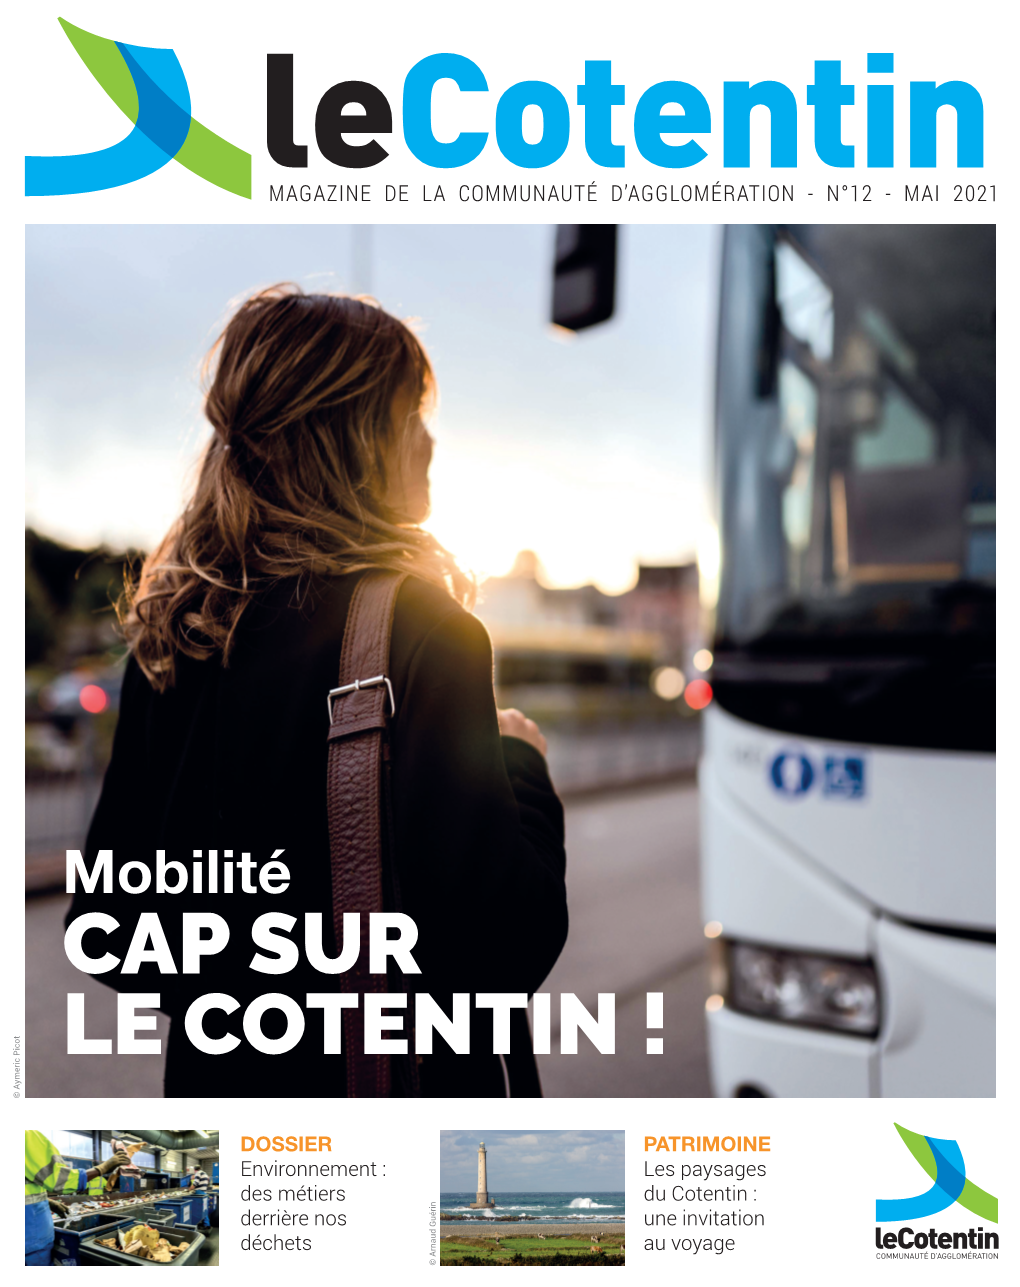 CAP SUR LE COTENTIN ! © Aymeric Picot